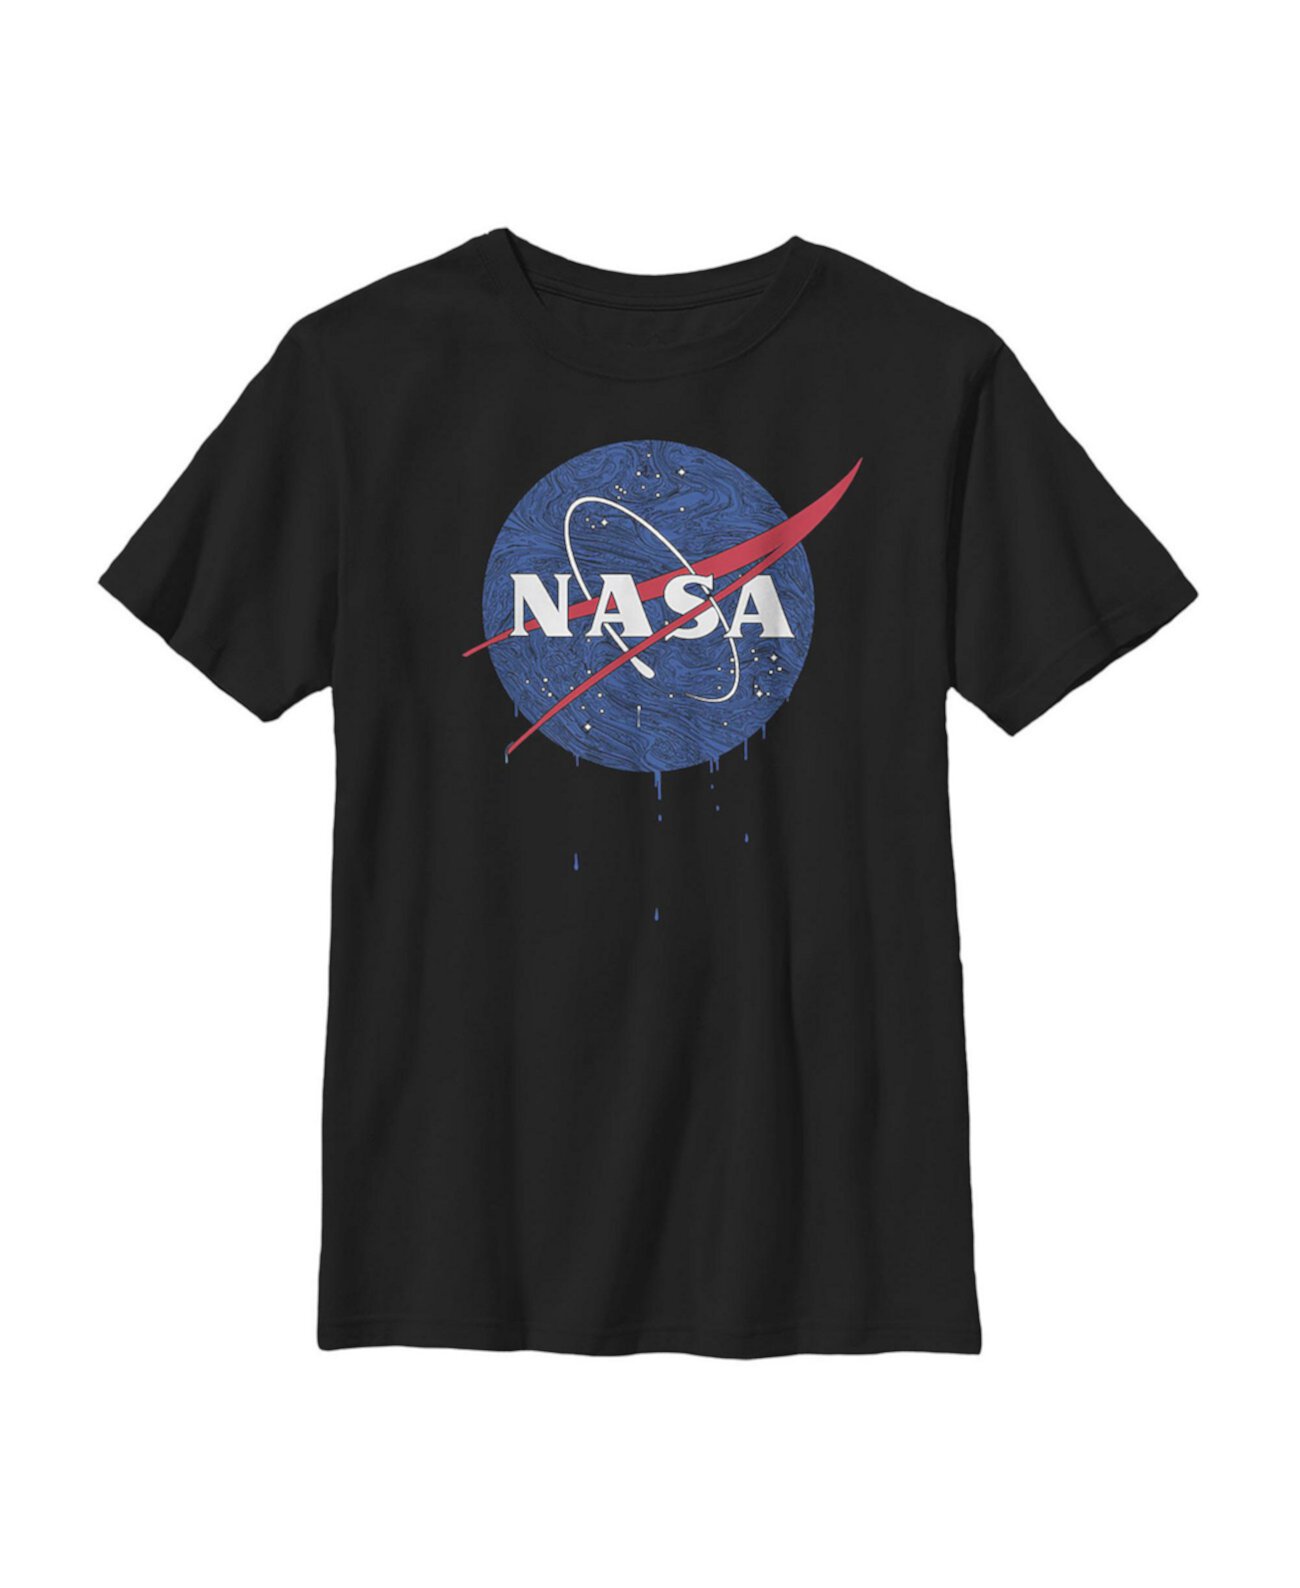 Детская футболка с логотипом Galactic Swirl для мальчиков NASA